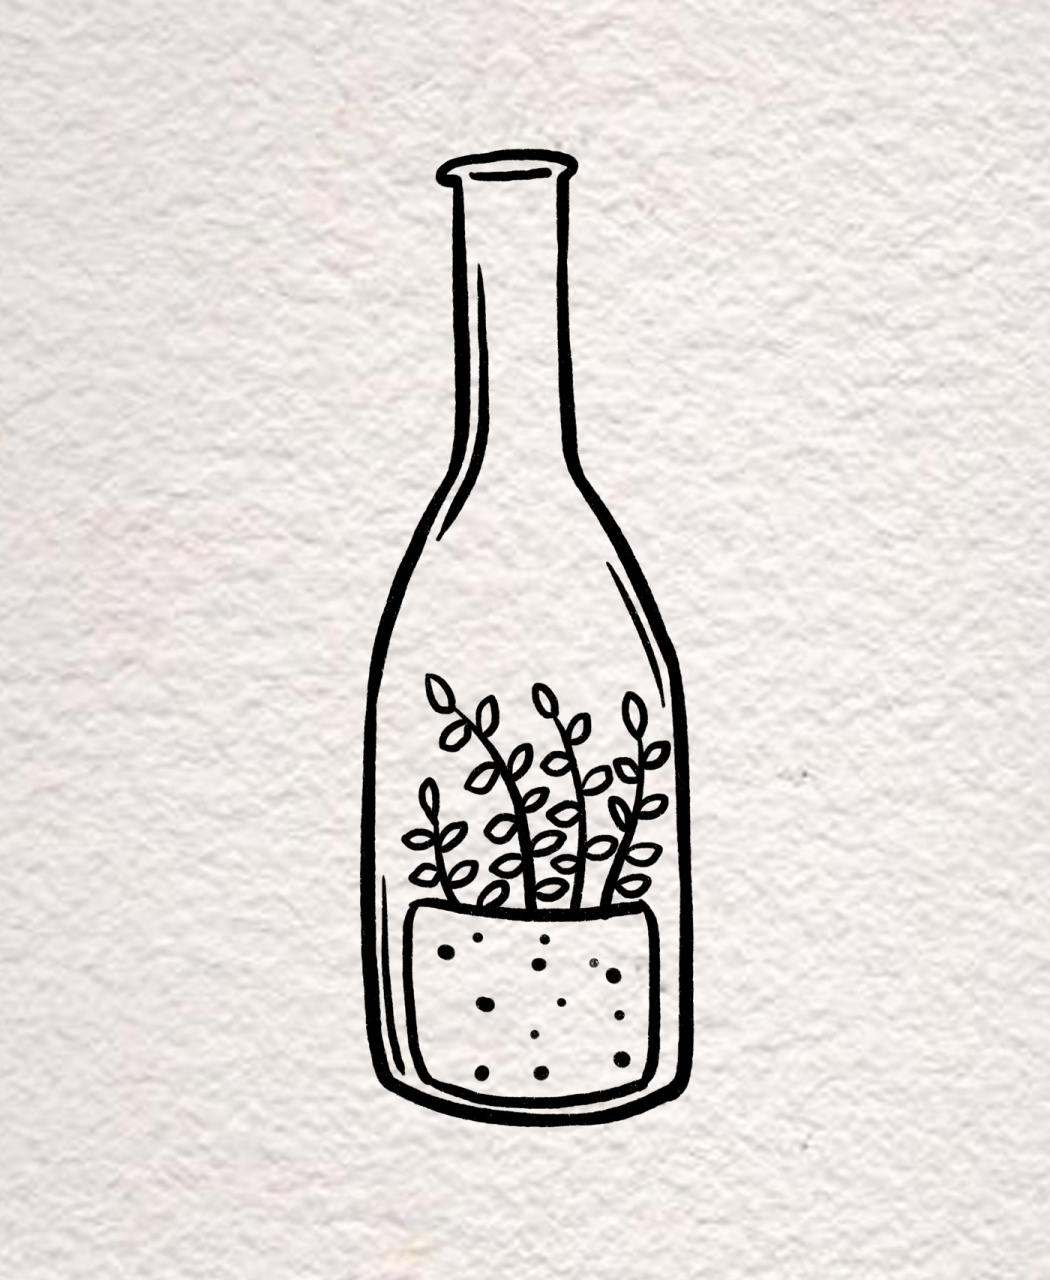 可爱瓶载简笔画系列【手帐素材必备】 一天一张小瓶子收藏起来呦,瓶子